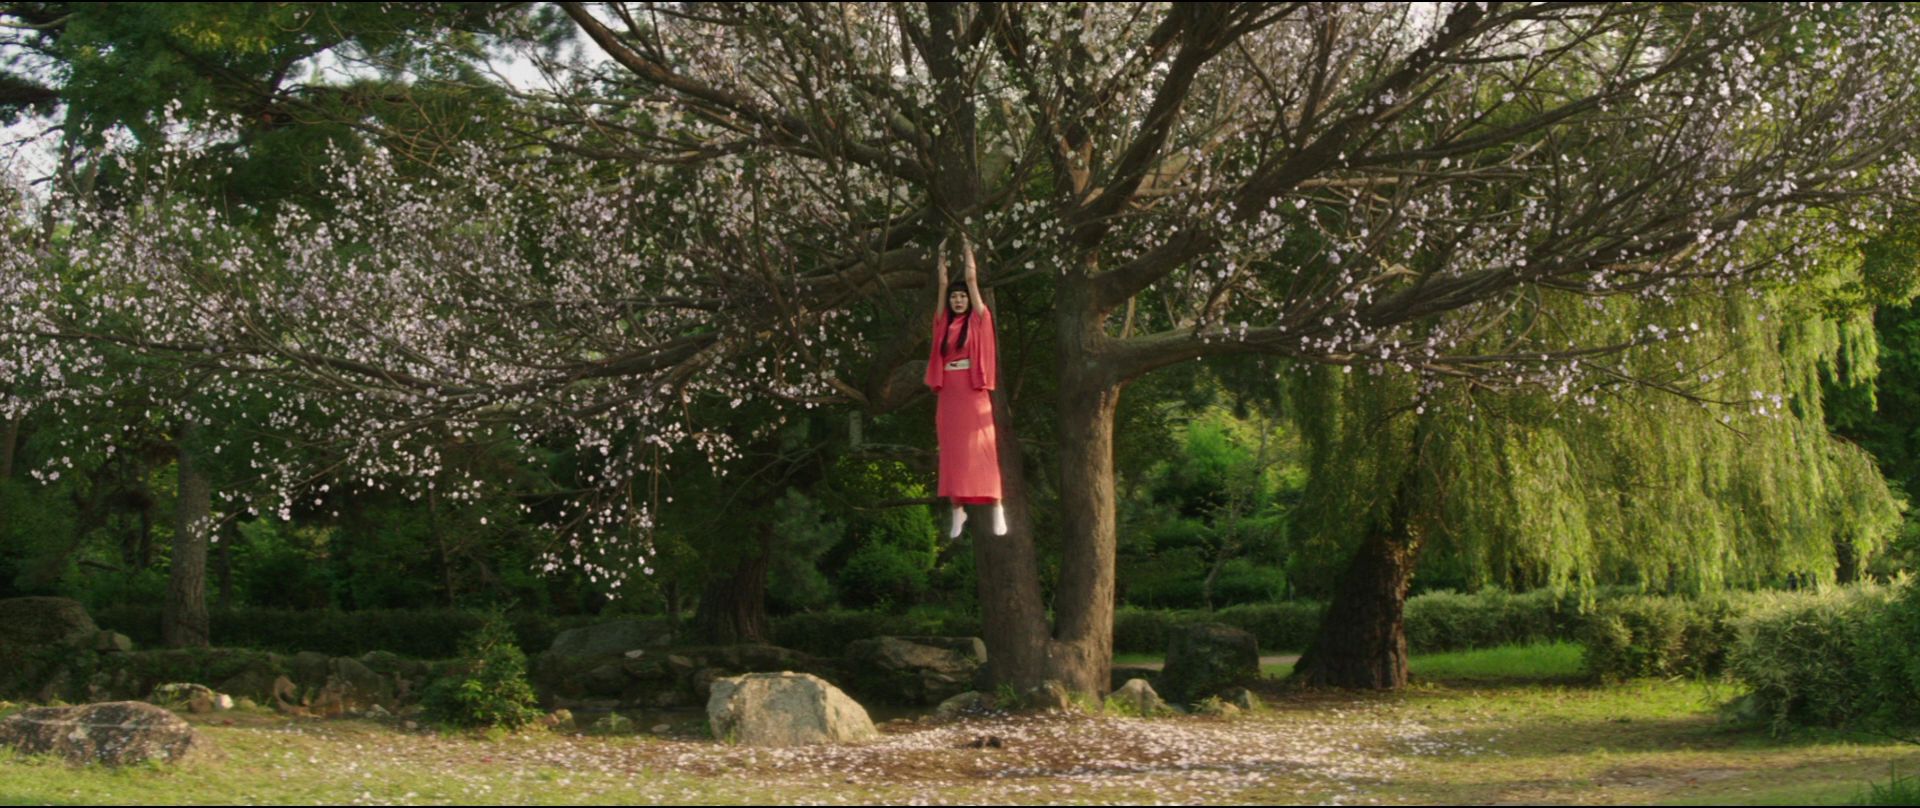 Cena do filme A Criada. Na imagem, Hideko, uma mulher asiática de cabelos escuros aparece se pendurando no galho de uma cerejeira. Ela veste laranja. Ao fundo, o cenário verde contempla o rosa das flores da árvore